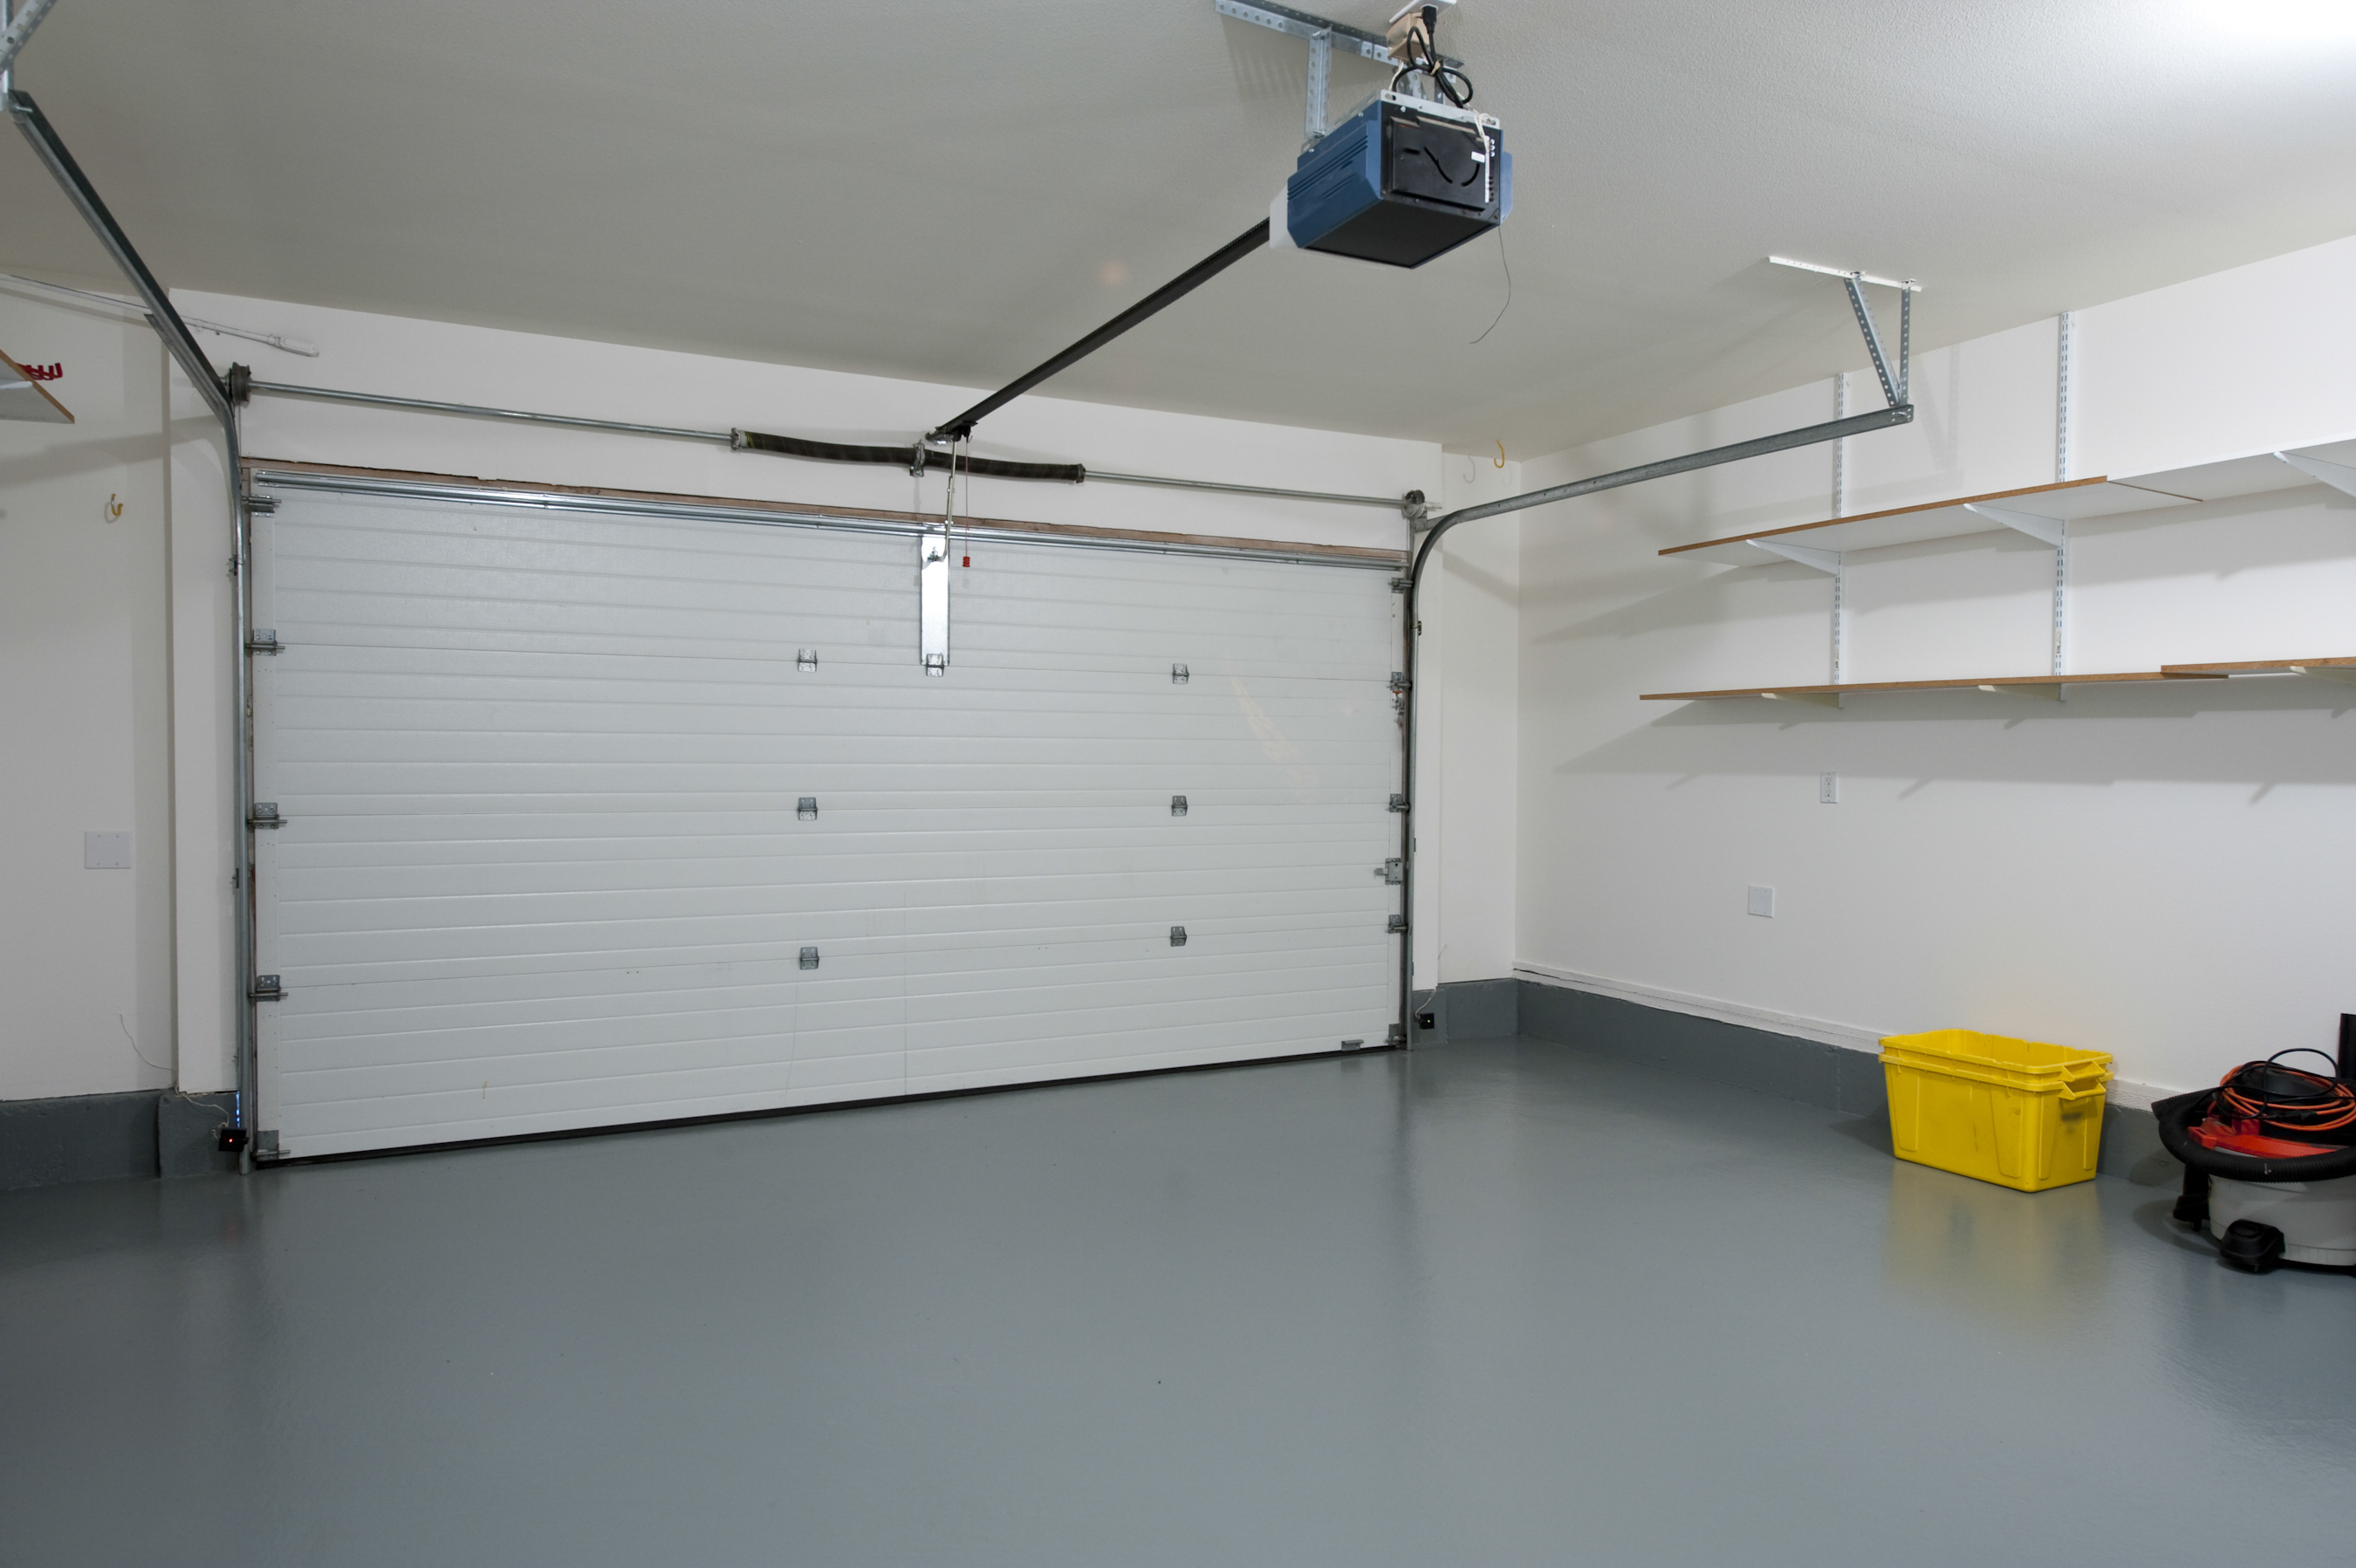 Как внутри отделать гараж фото: Отделка гаража (80 фото): внутреннее оформление стен своими руками, дизайн